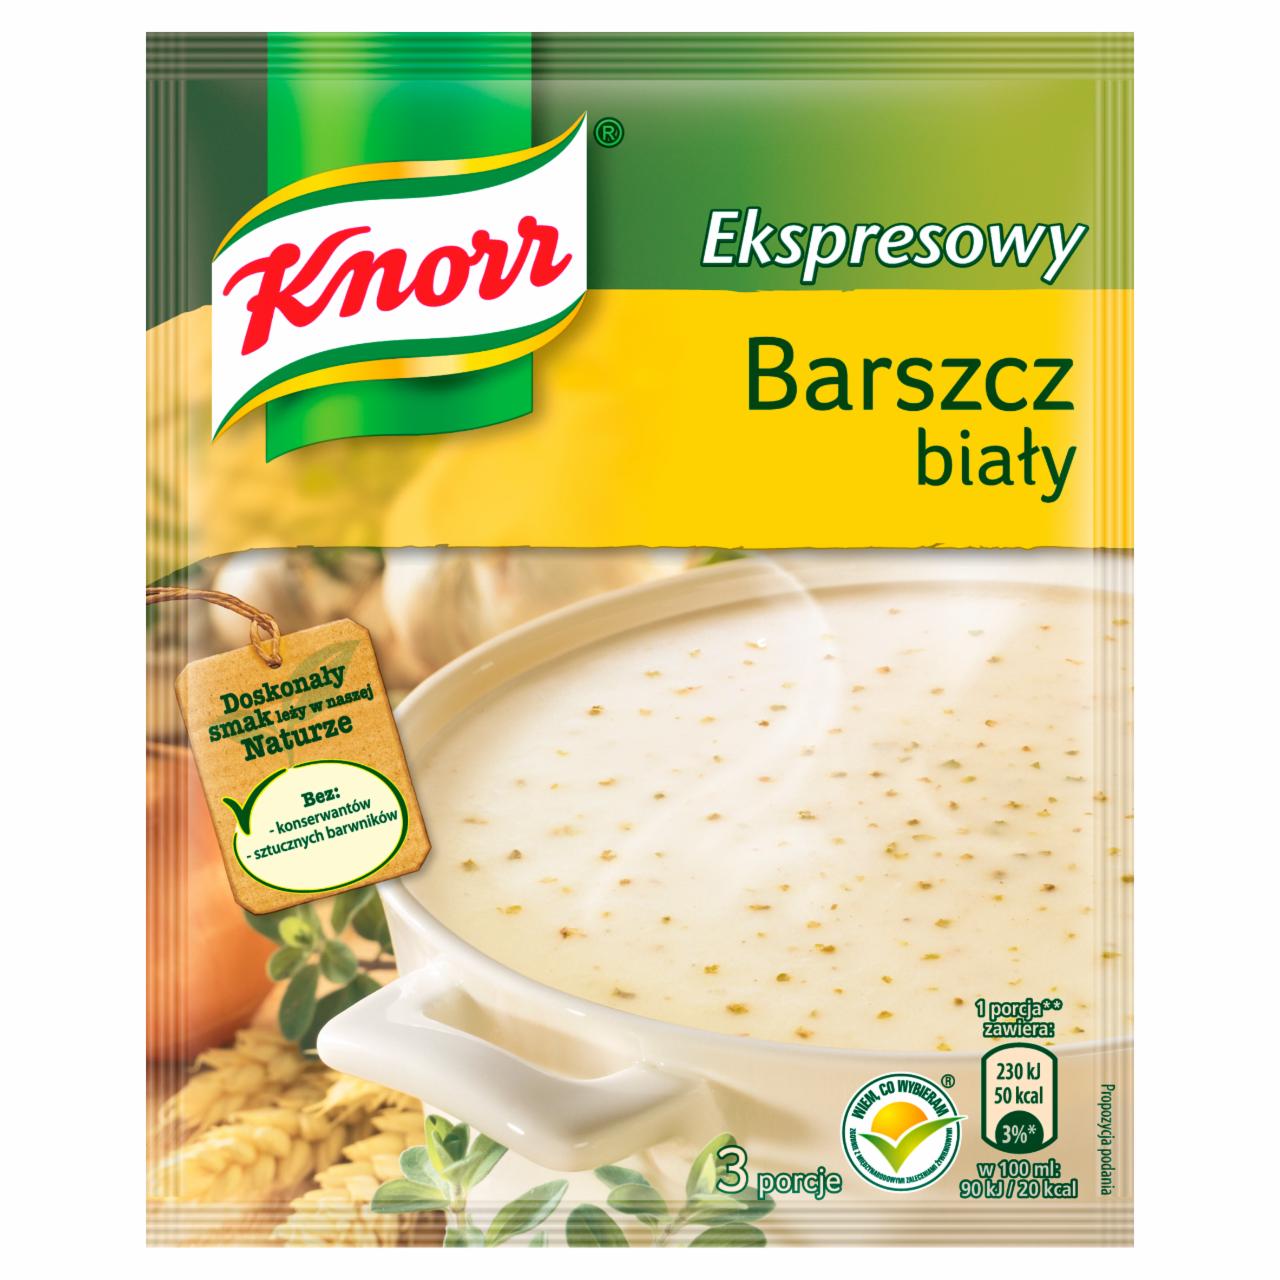 Zdjęcia - Knorr Ekspresowy barszcz biały 45 g